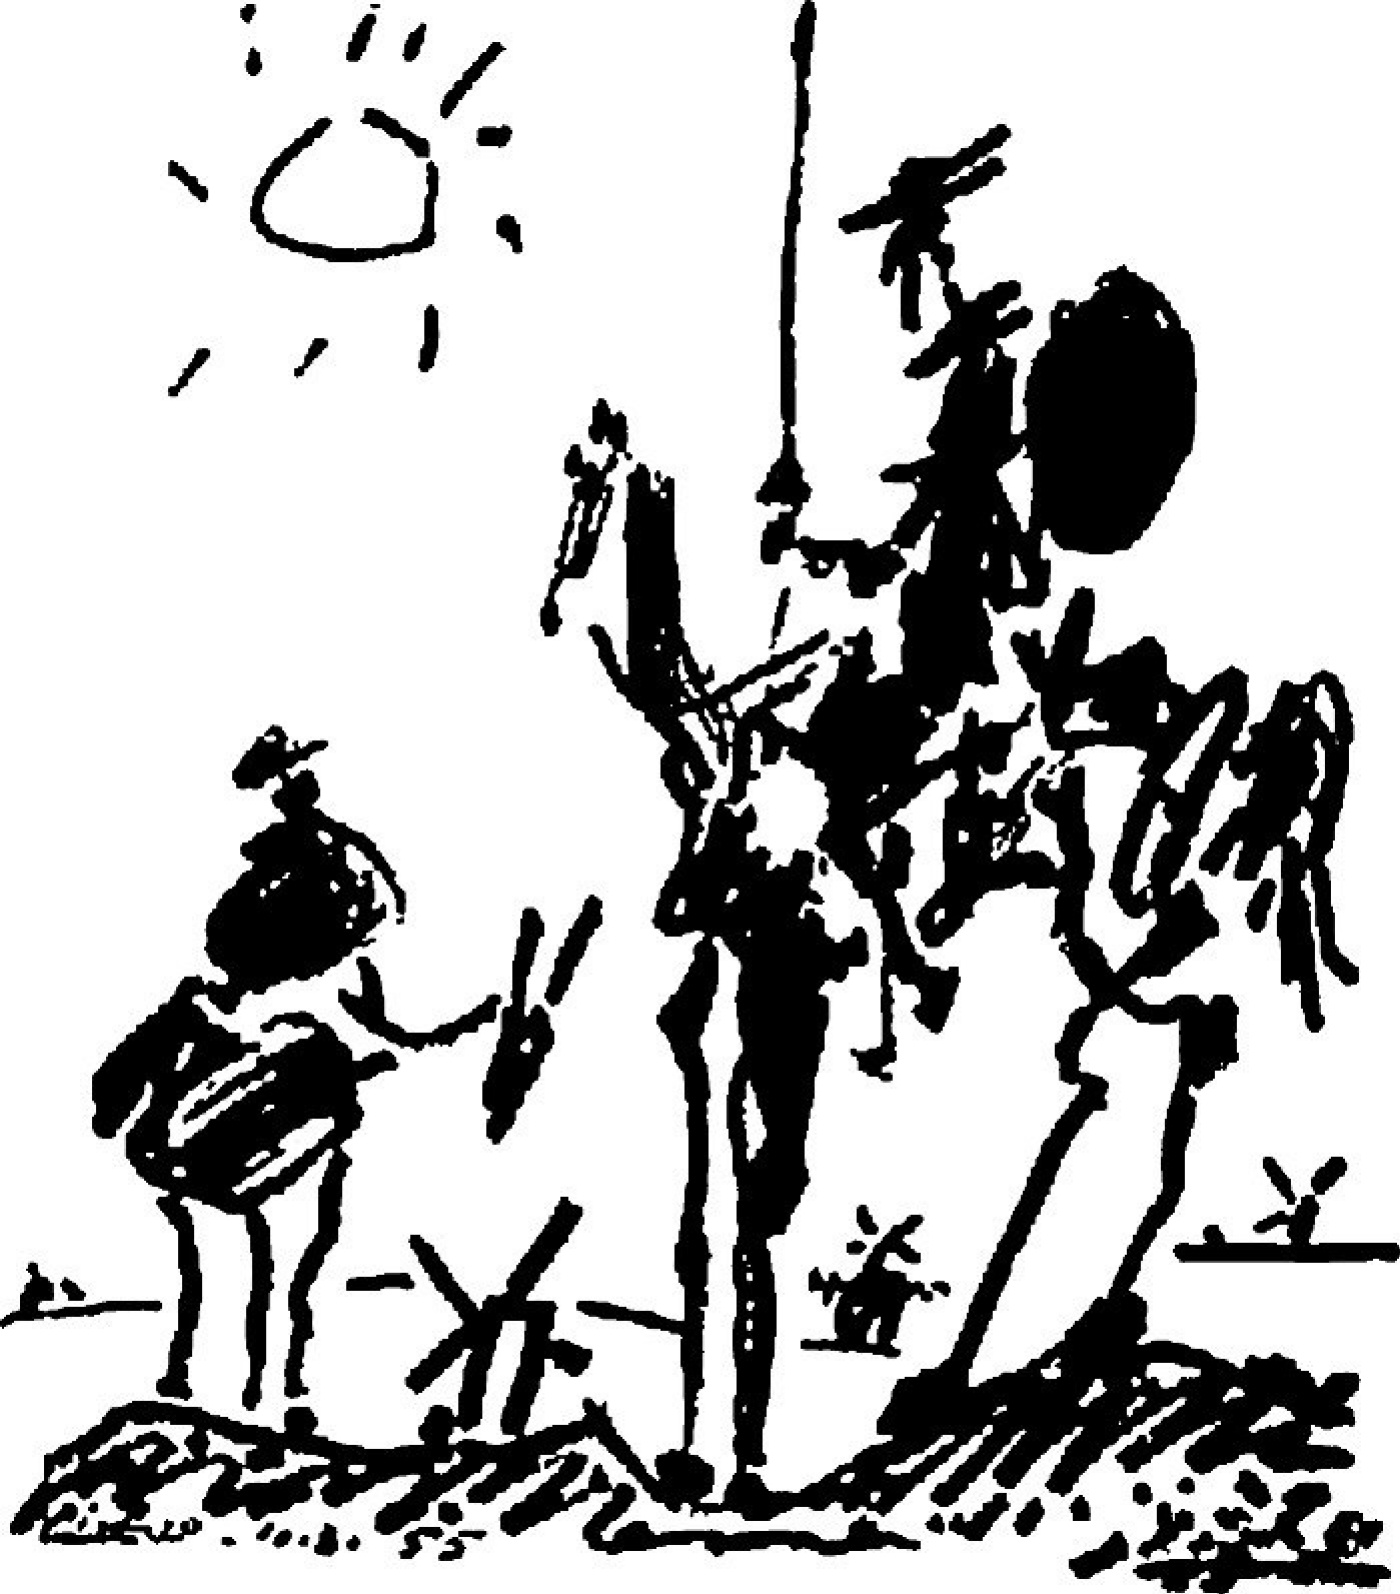 Pablo Picasso Don Quixote, 1955: Descrizione dell'opera | Arthive